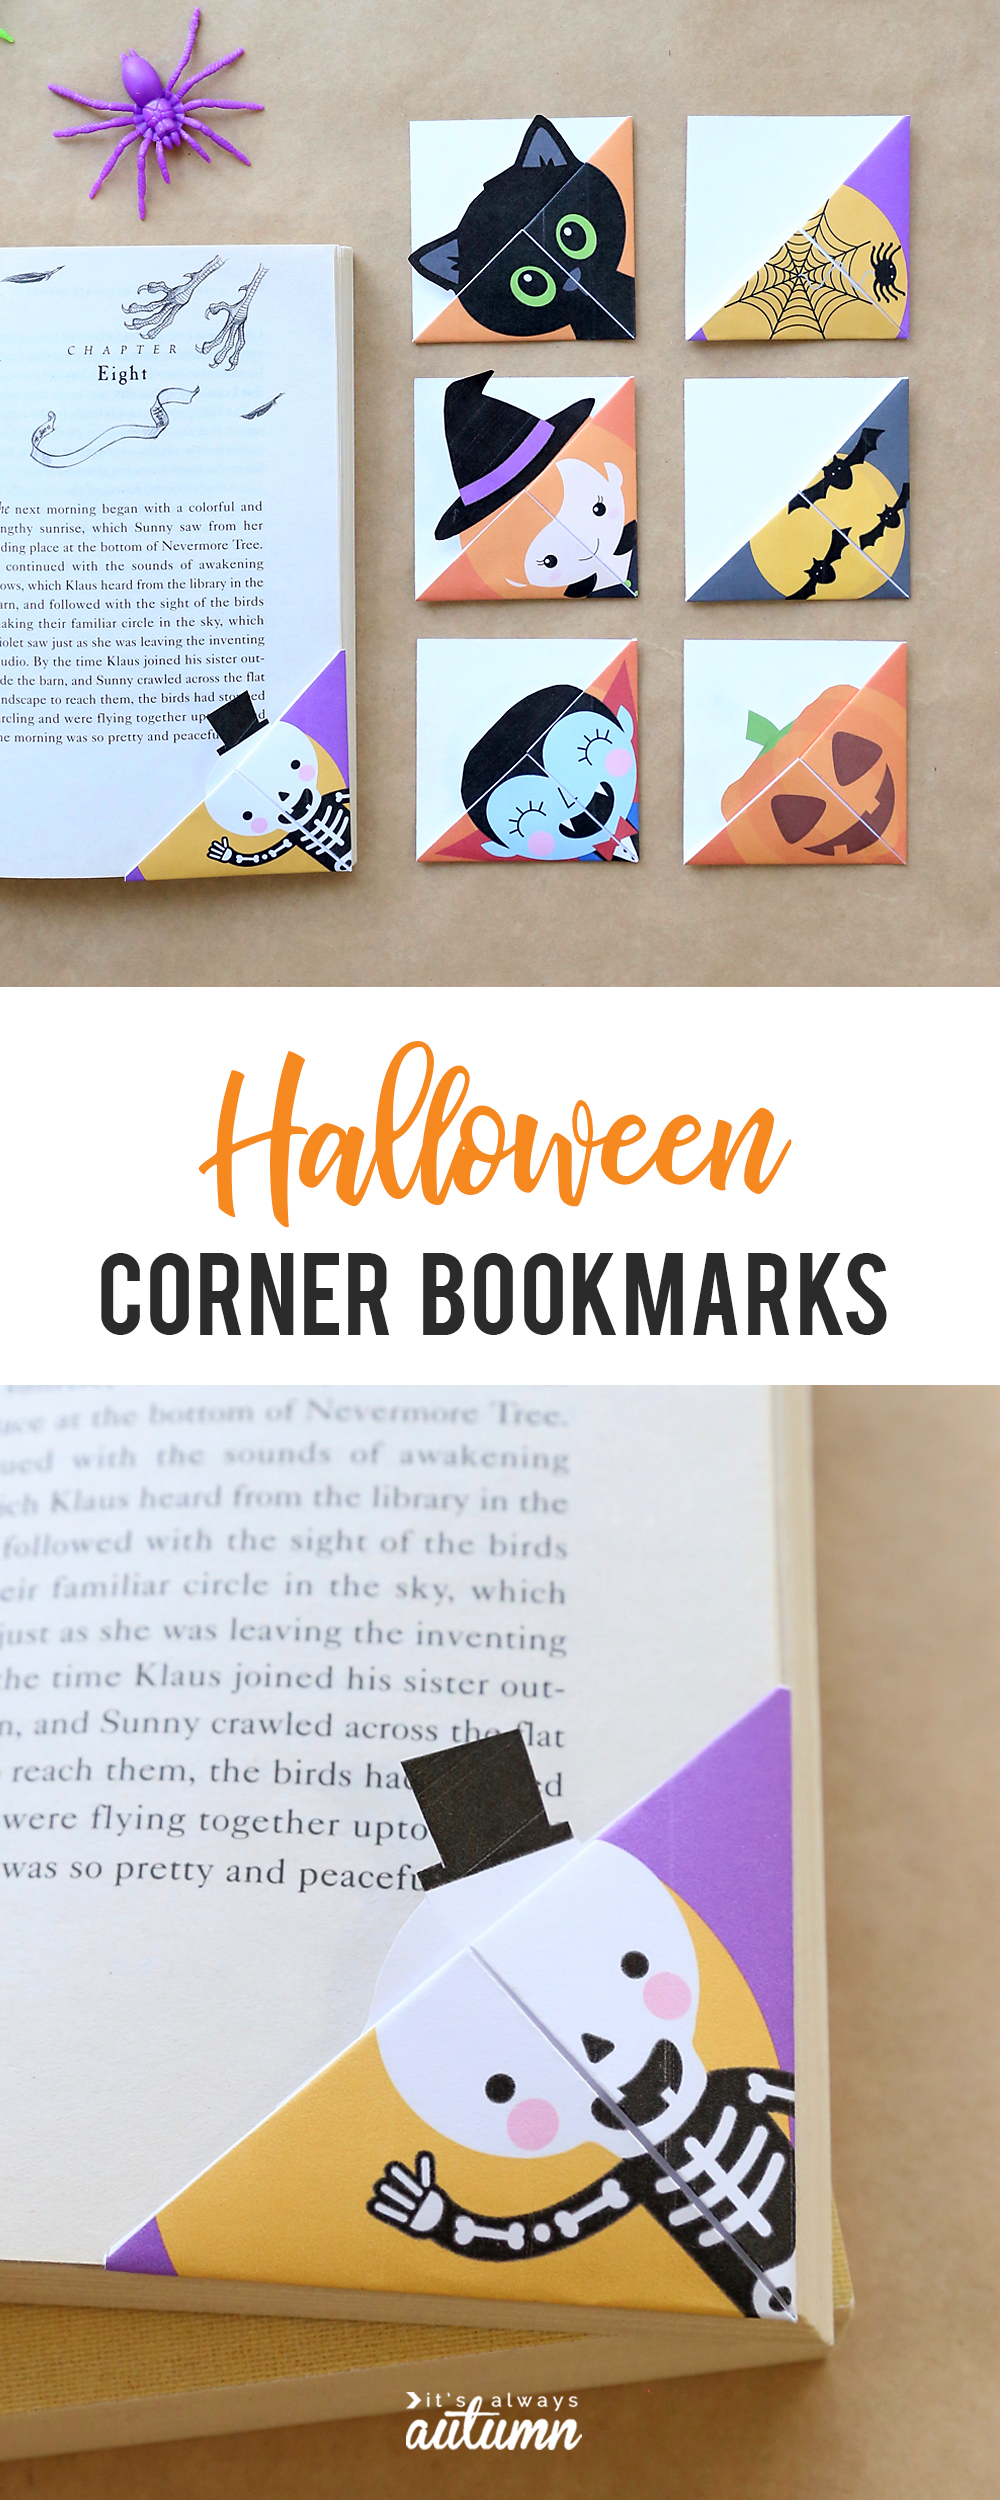 Halloween corner bookmarks